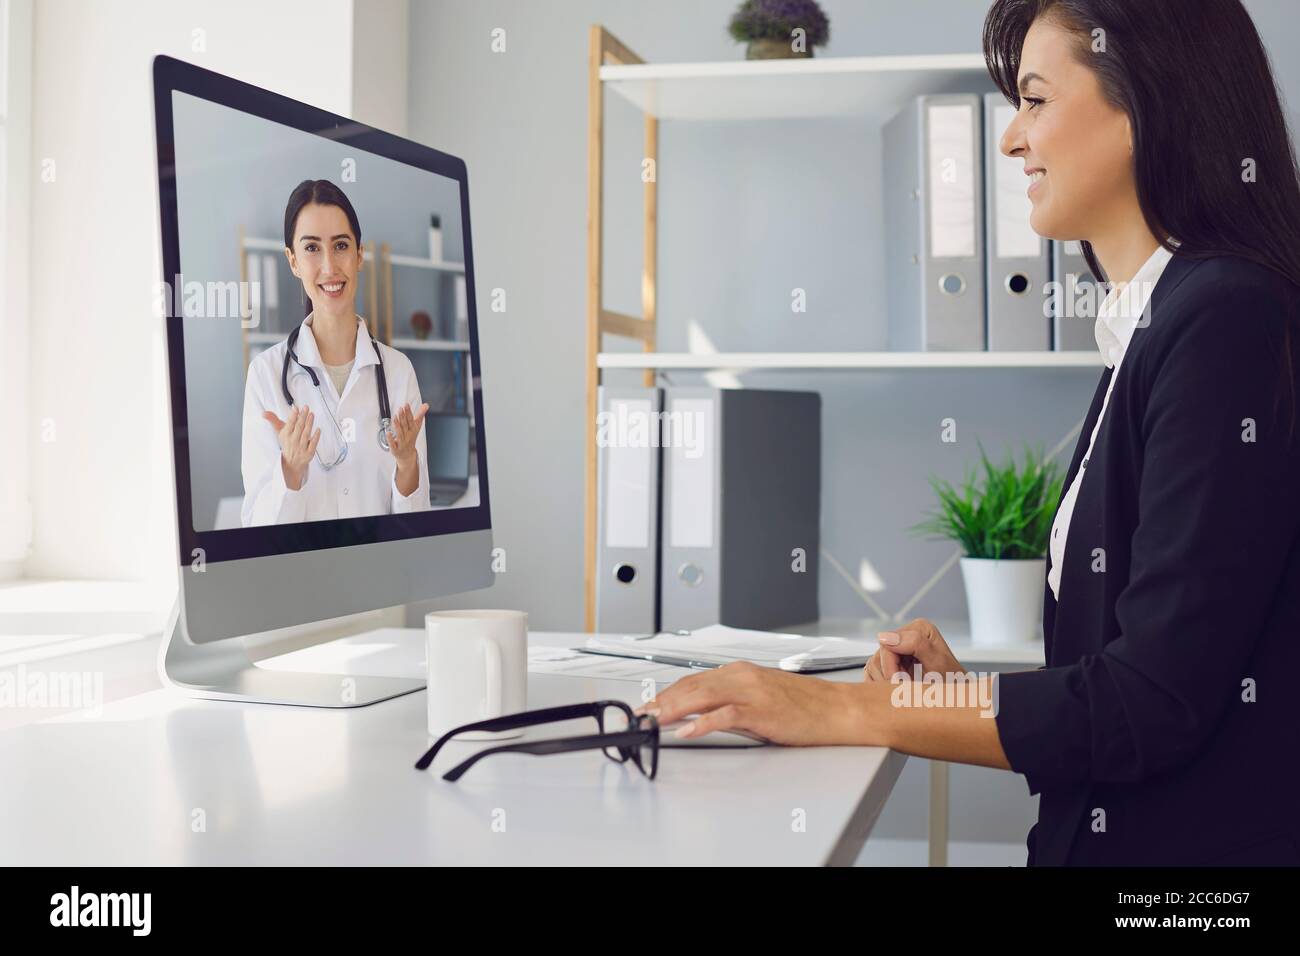 Jeune belle femme d'affaires est au bureau au travail utilise un appel vidéo pour parler à un médecin en ligne. Banque D'Images